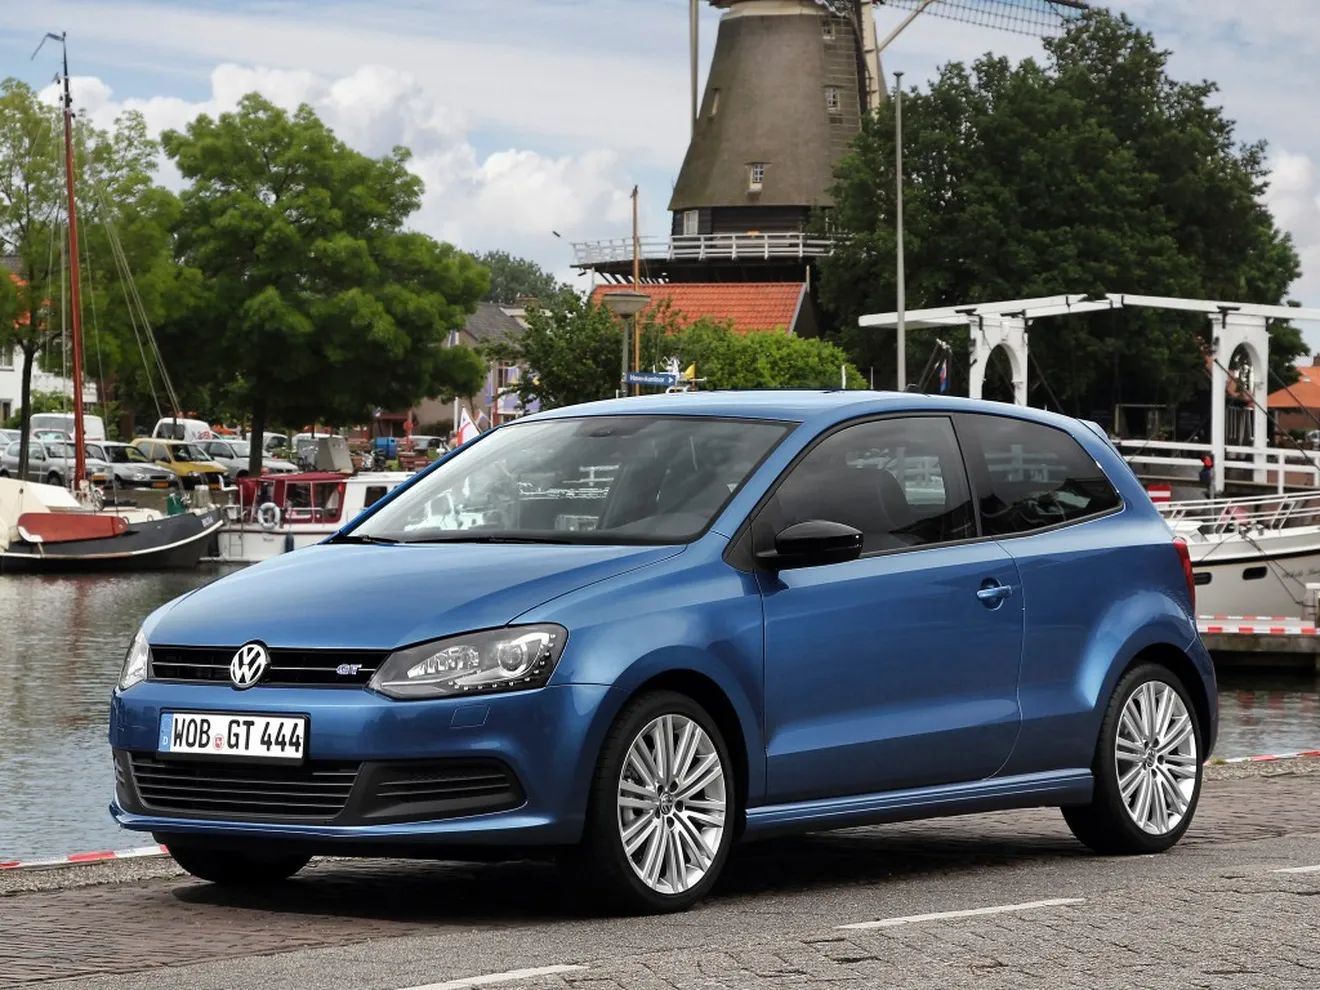 Holanda - Julio 2016: El Volkswagen Polo se hace con el liderato